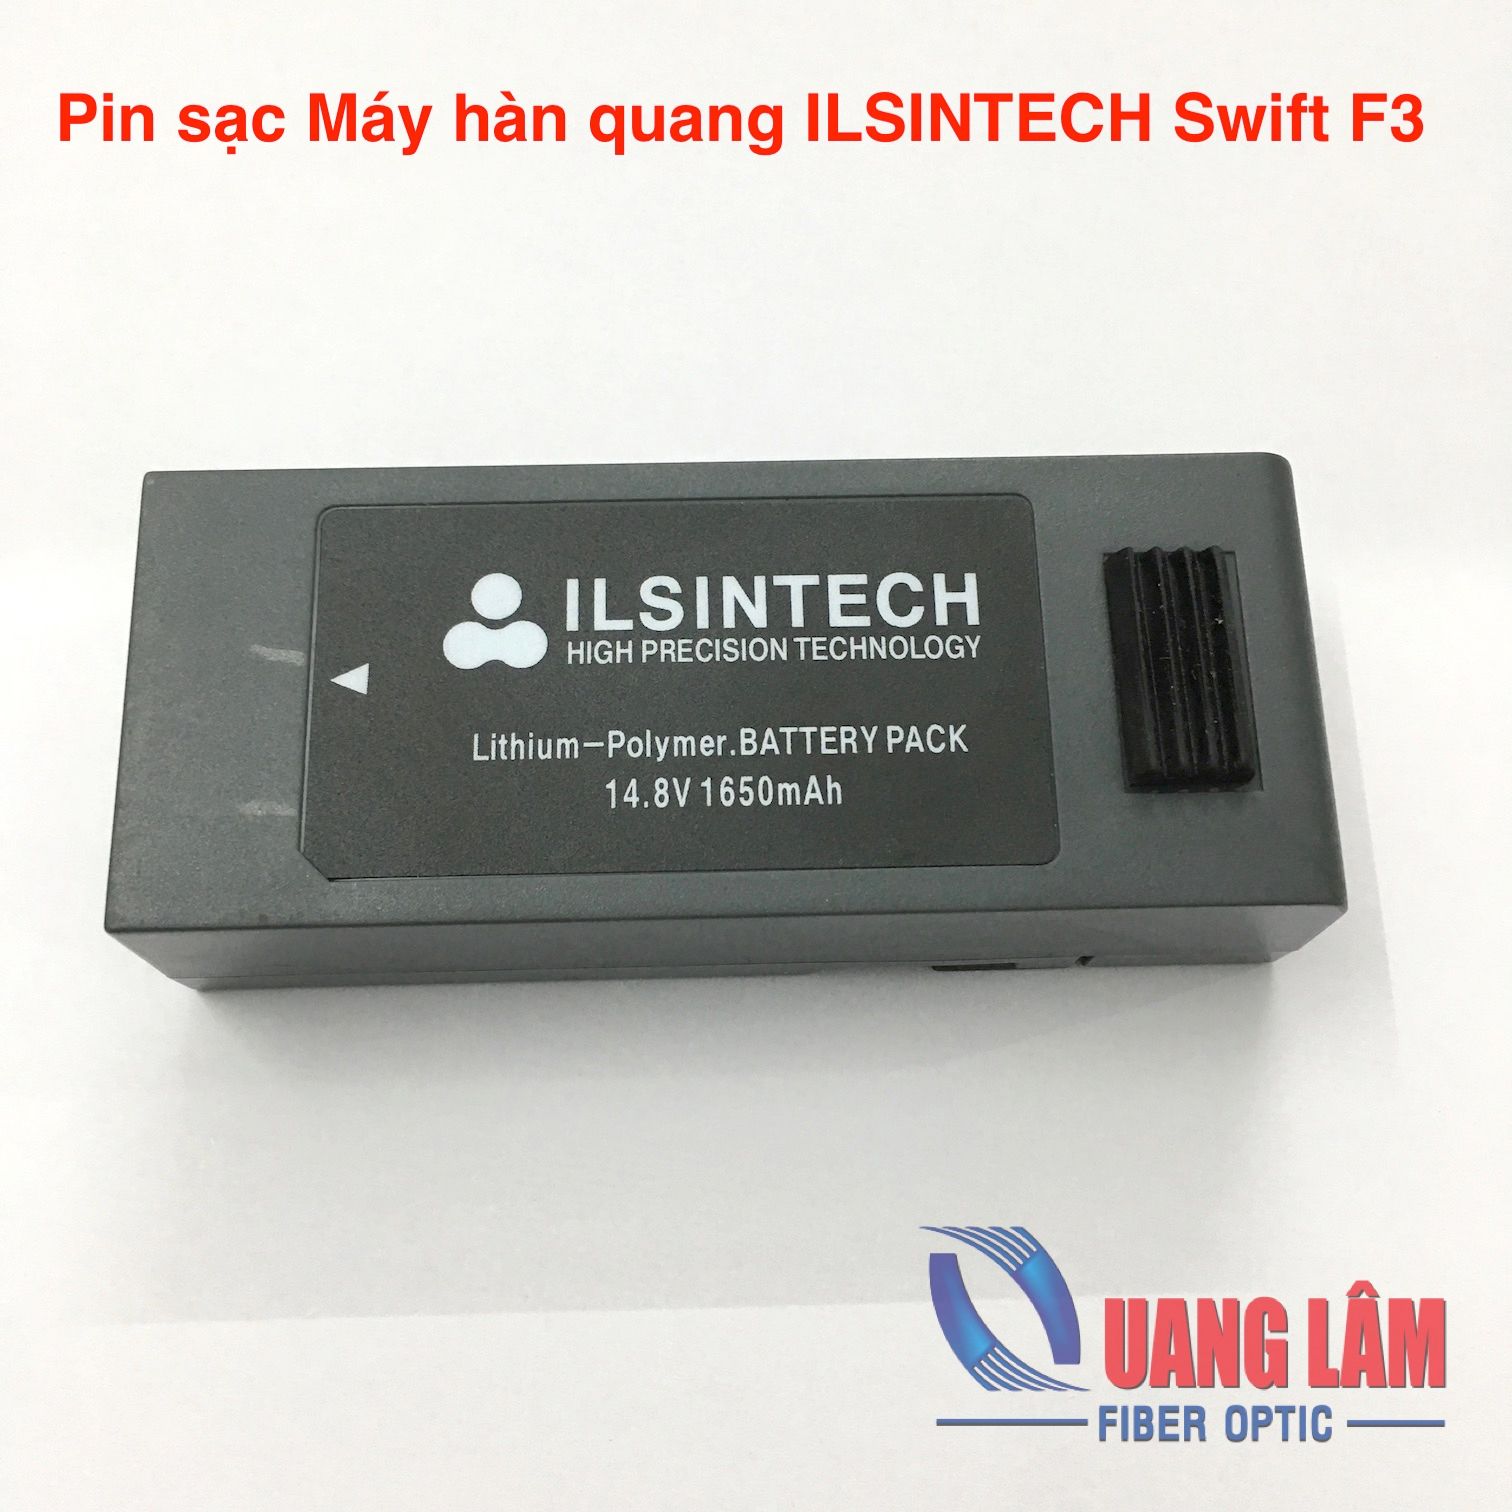 Pin sạc cho Máy hàn quang ILSINTECH Swift F3